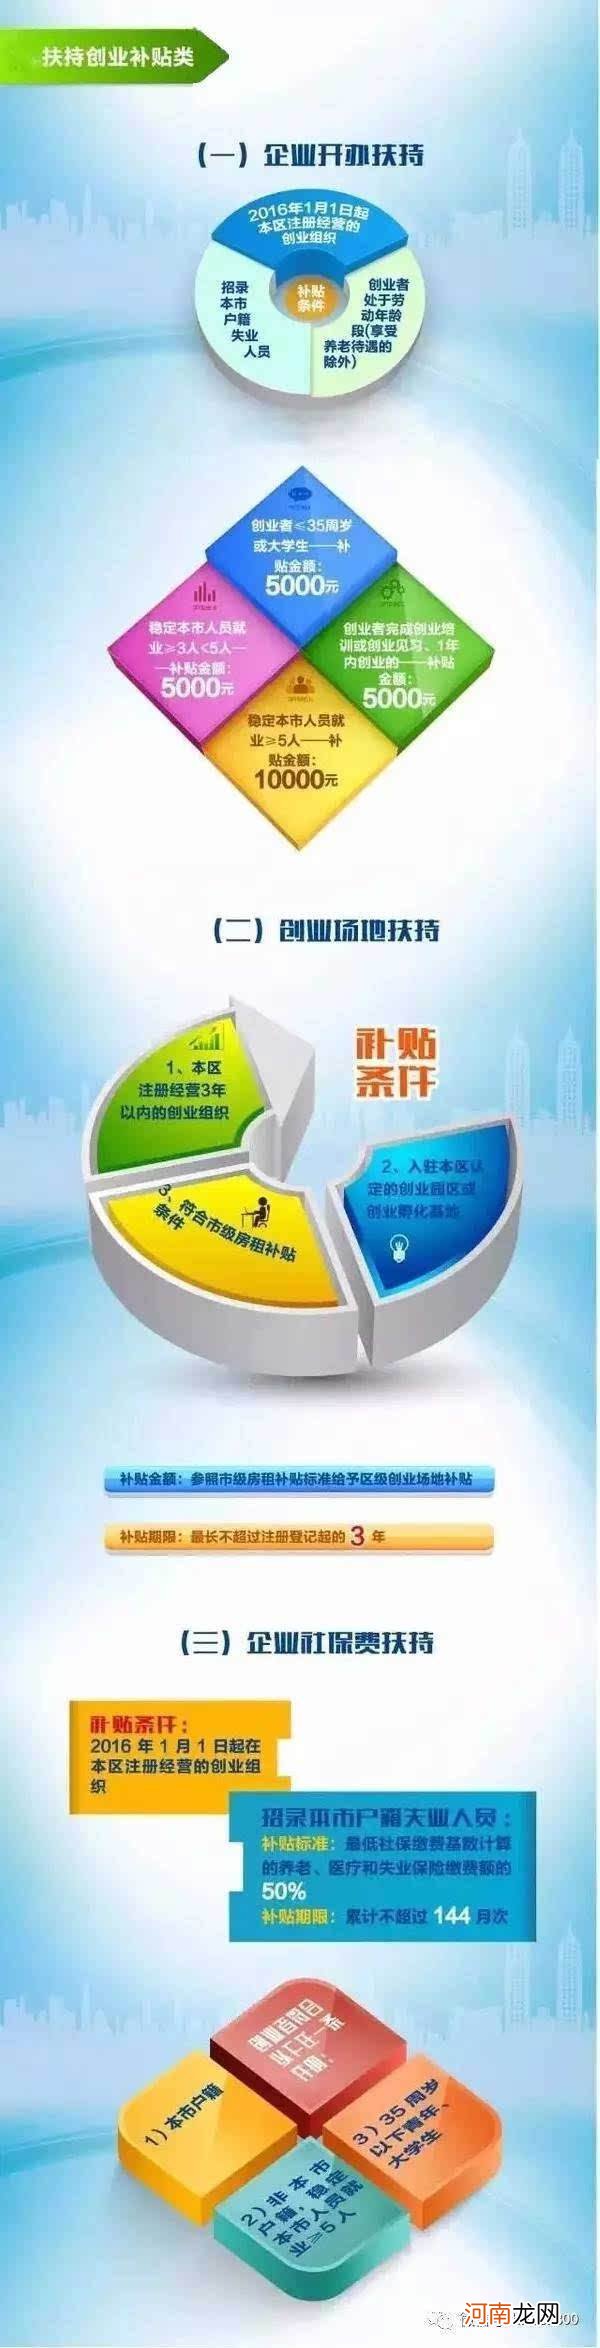 创业孵化扶持政策河北 河北省颁布的创业扶持政策